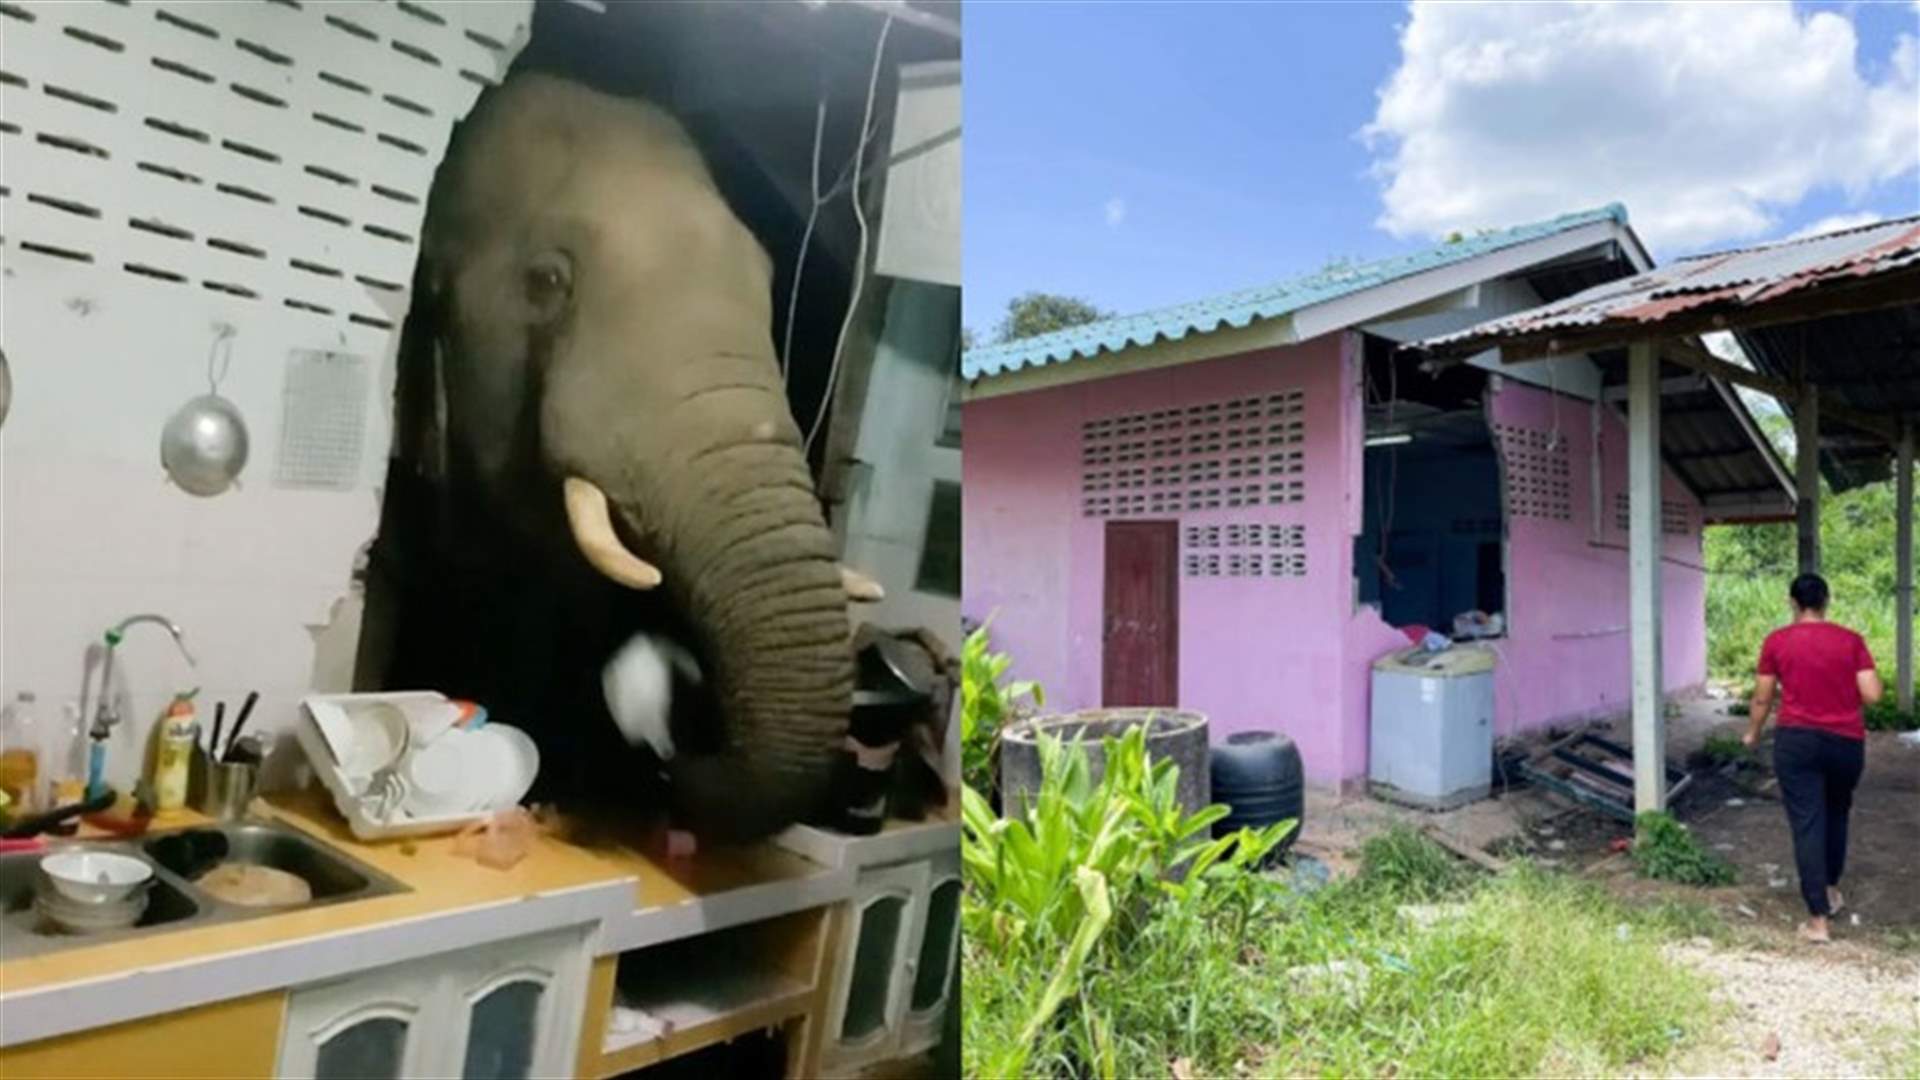 فيل جائع يقتحم منزلاً بحثاً عن الطعام في تايلاند (فيديو)